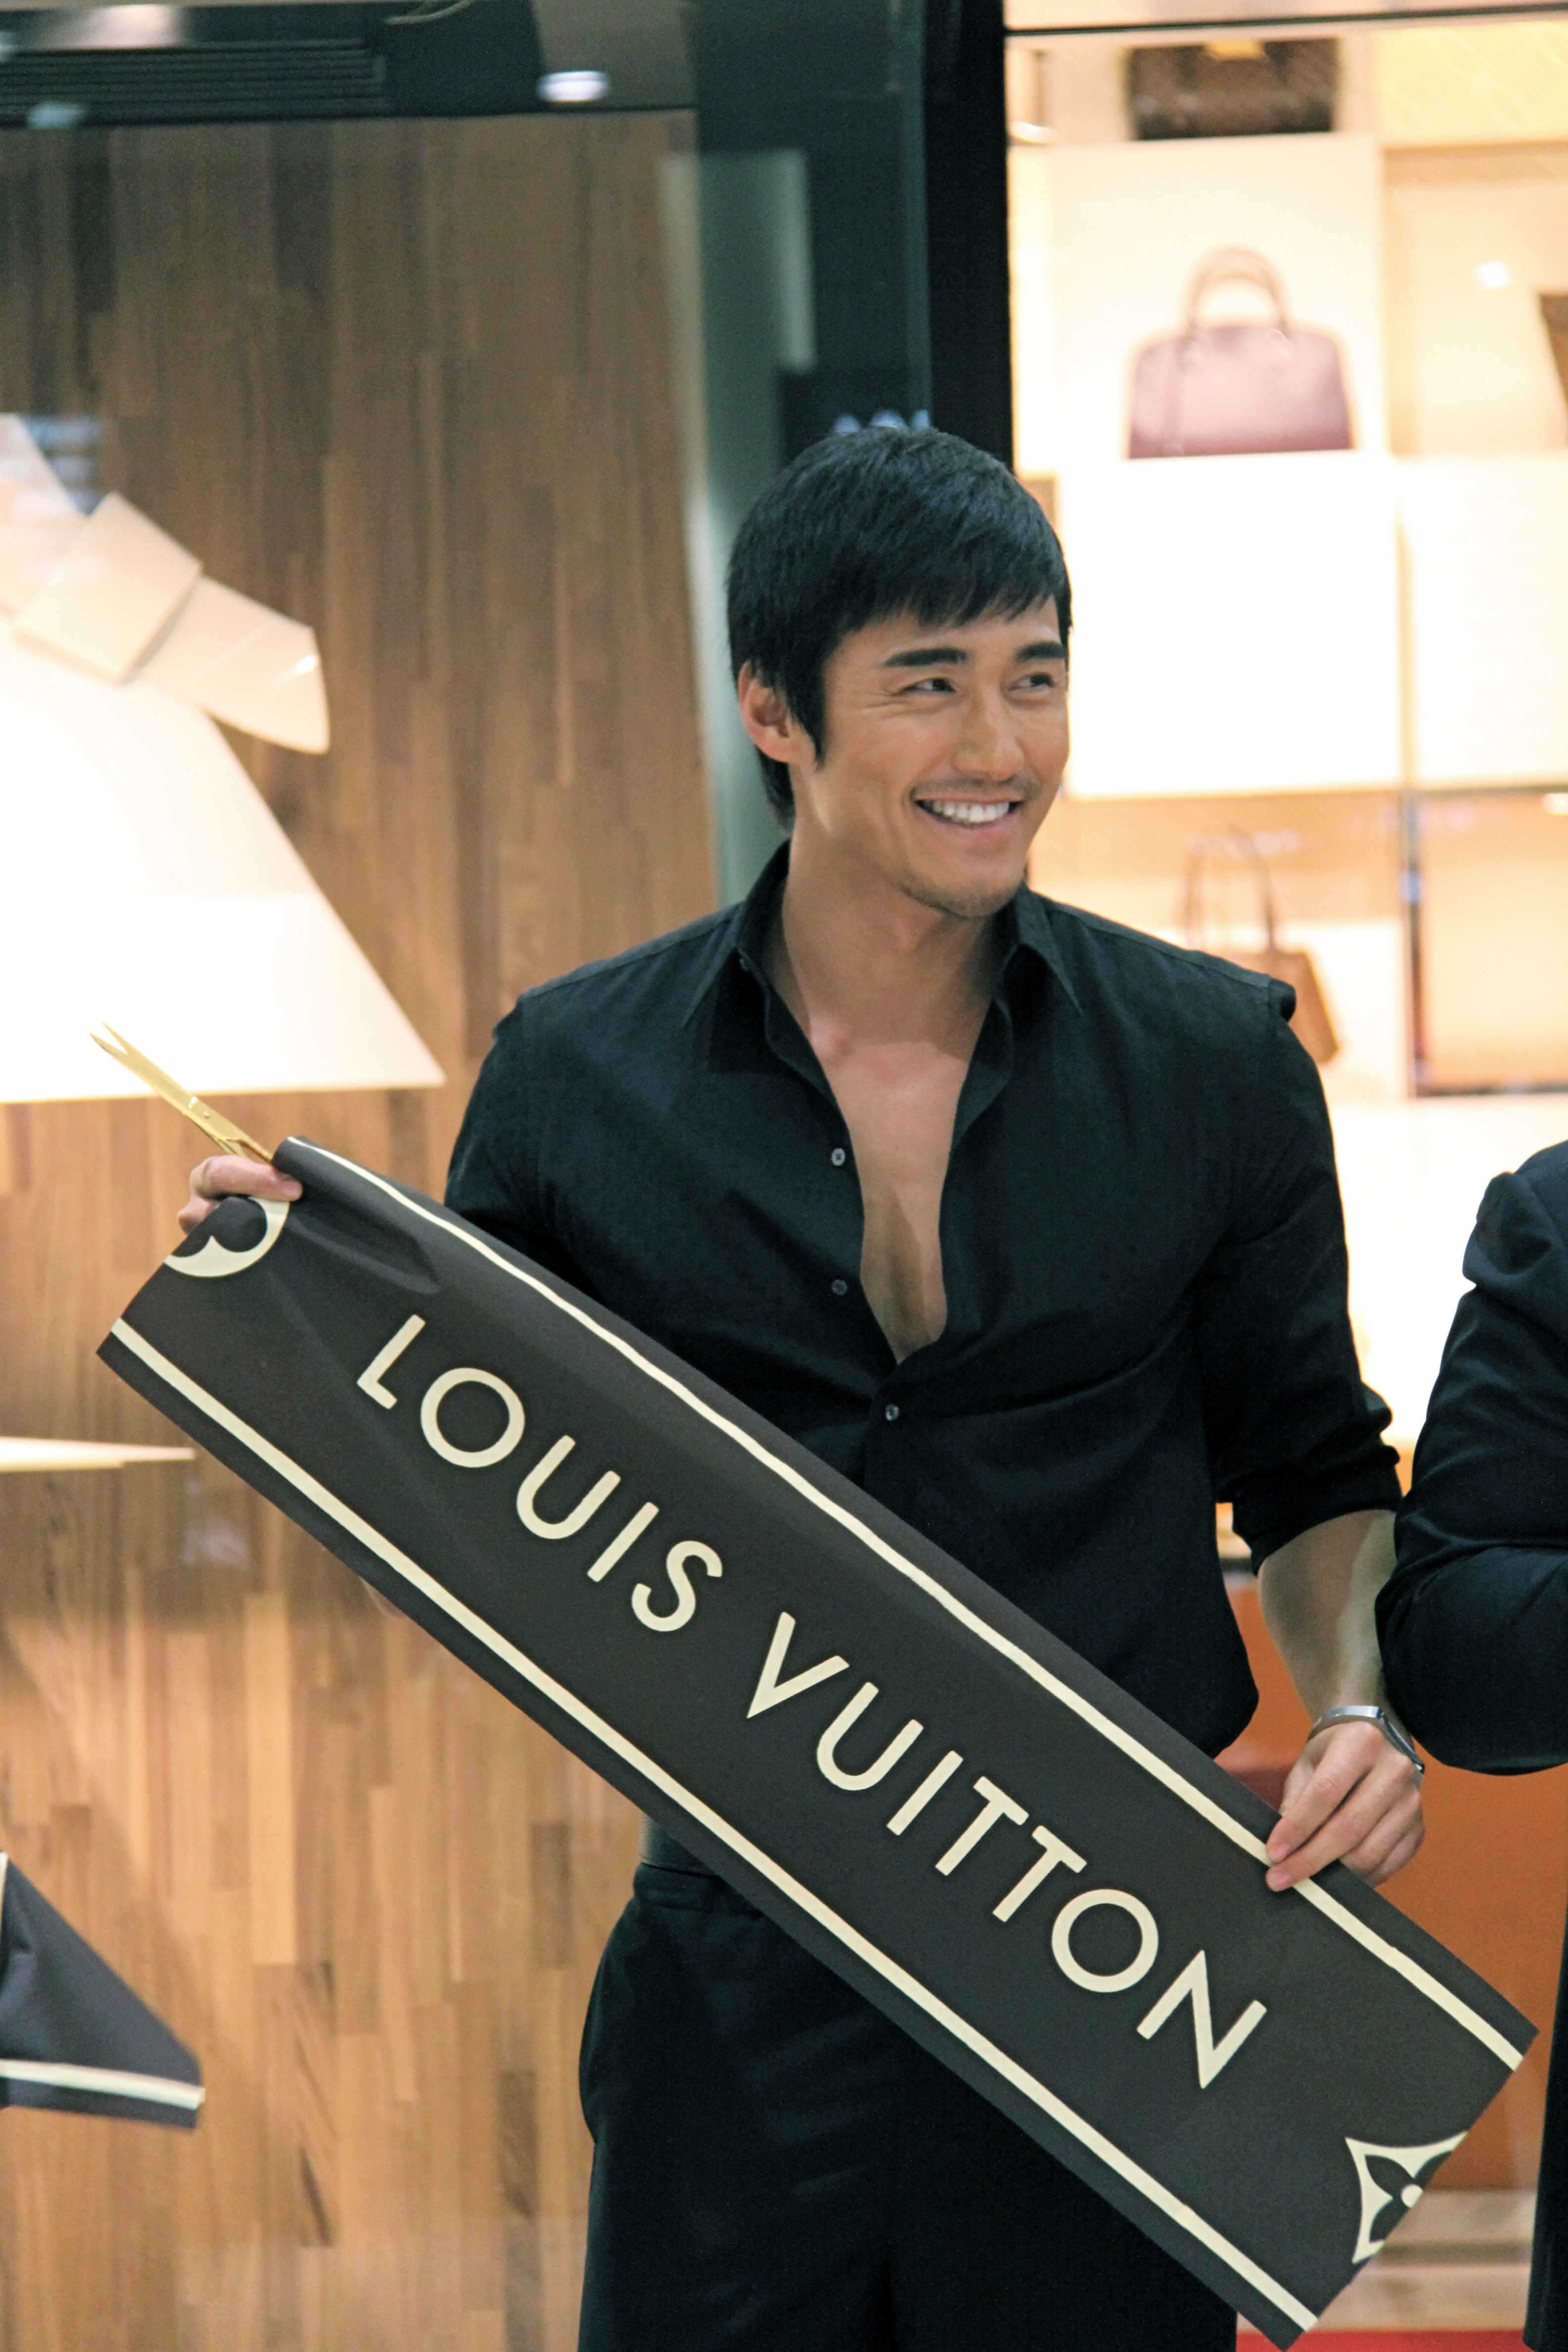 File:Hu Bing for Louis Vuitton.JPG - Wikipedia